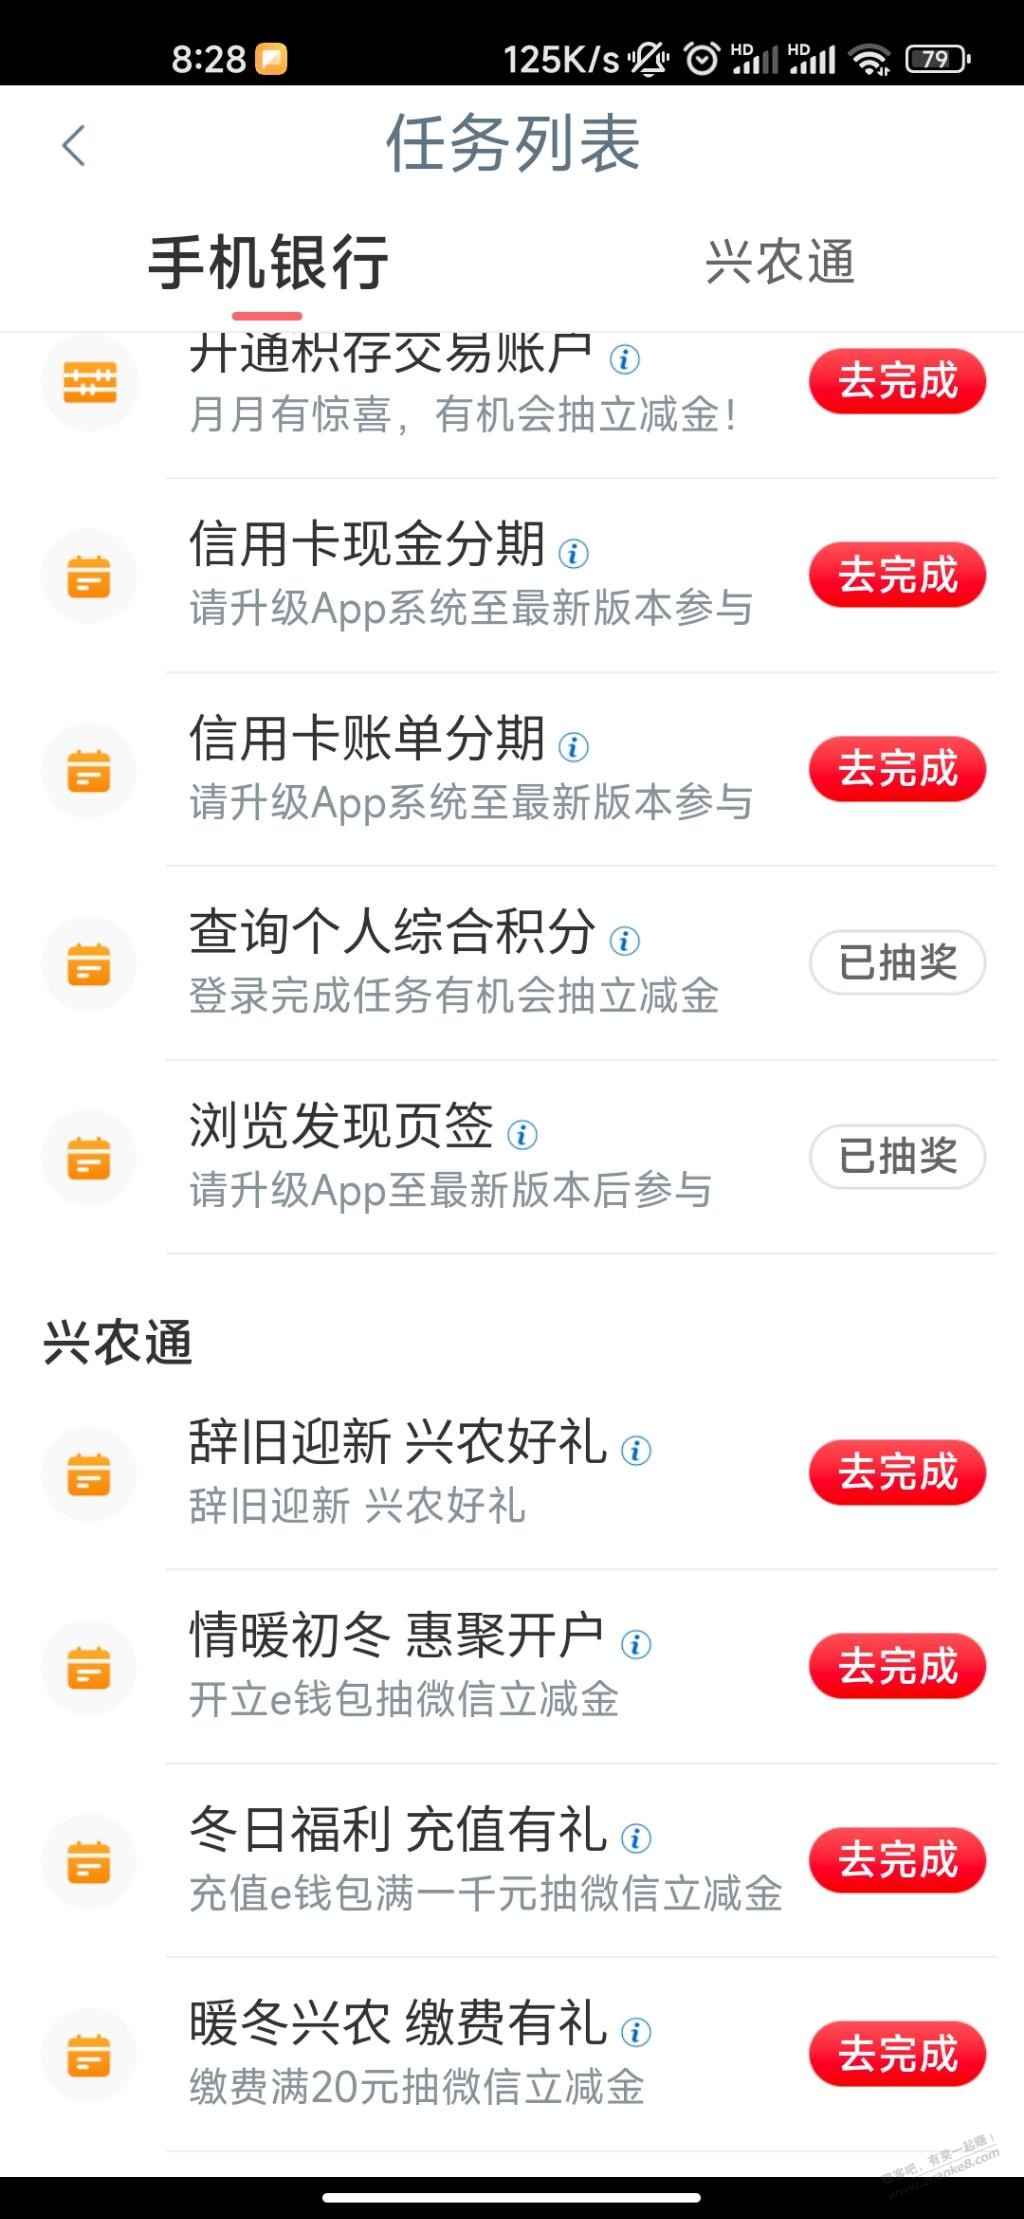 工行app大概率 2V.x立减金-惠小助(52huixz.com)